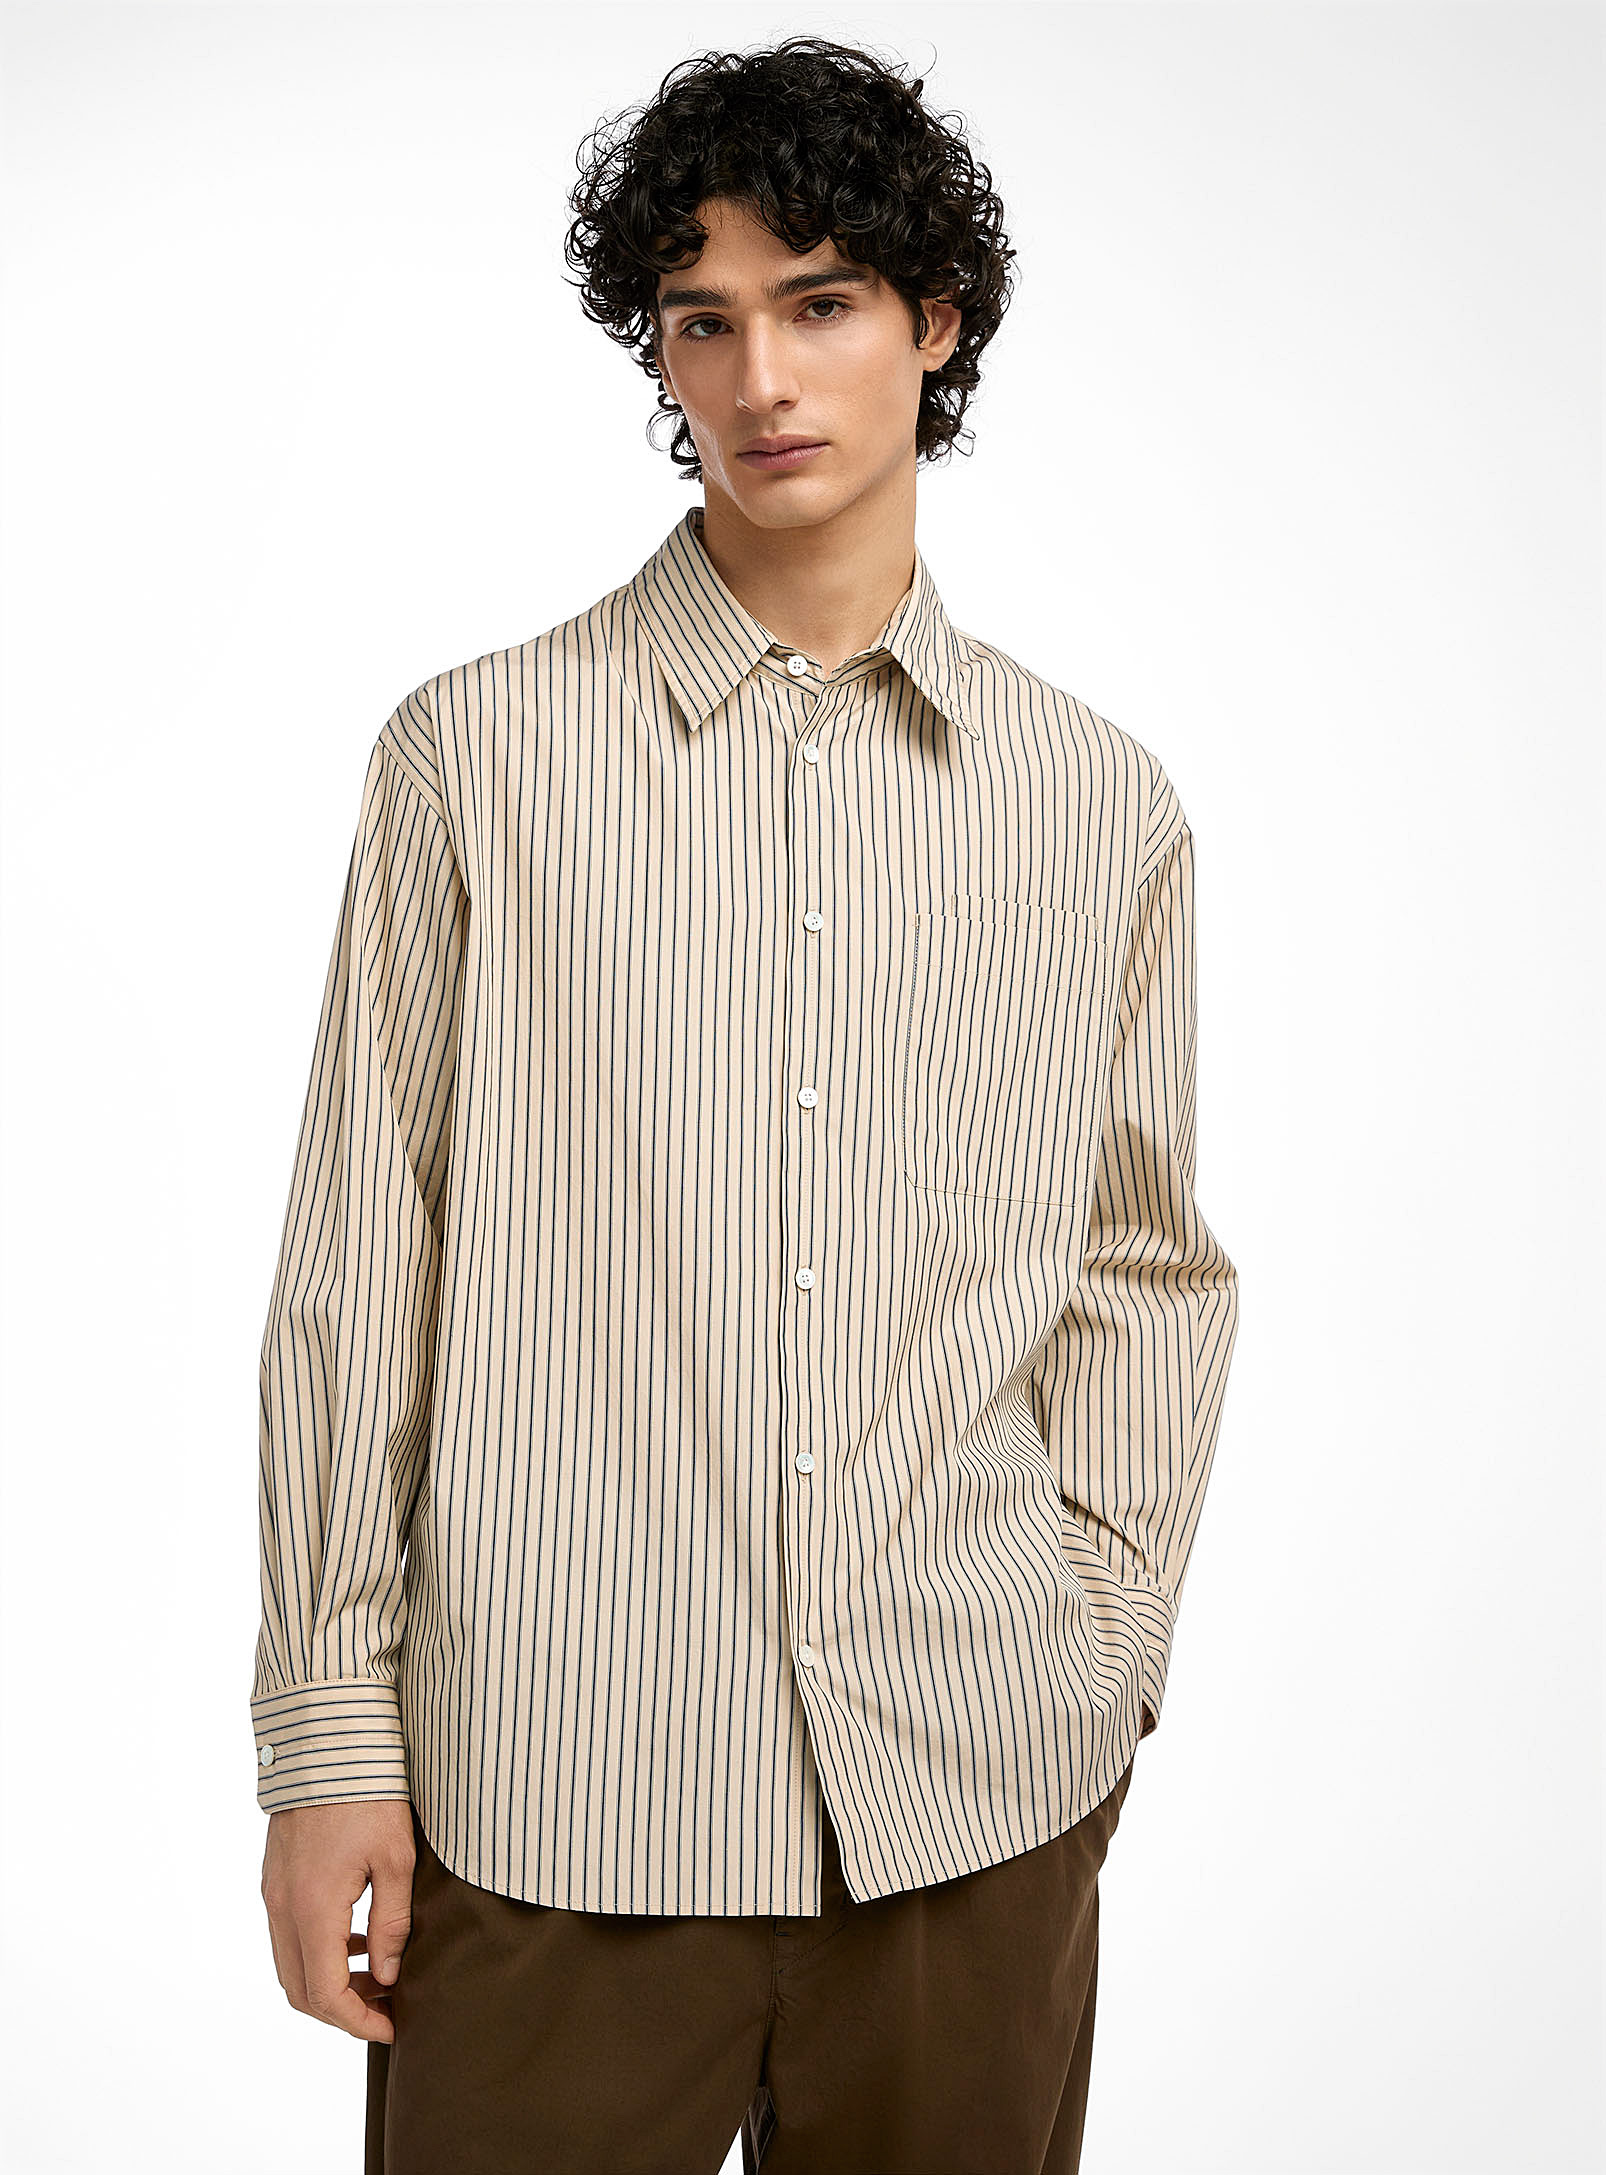 Lemaire - Men's Pure cotton striped shirt